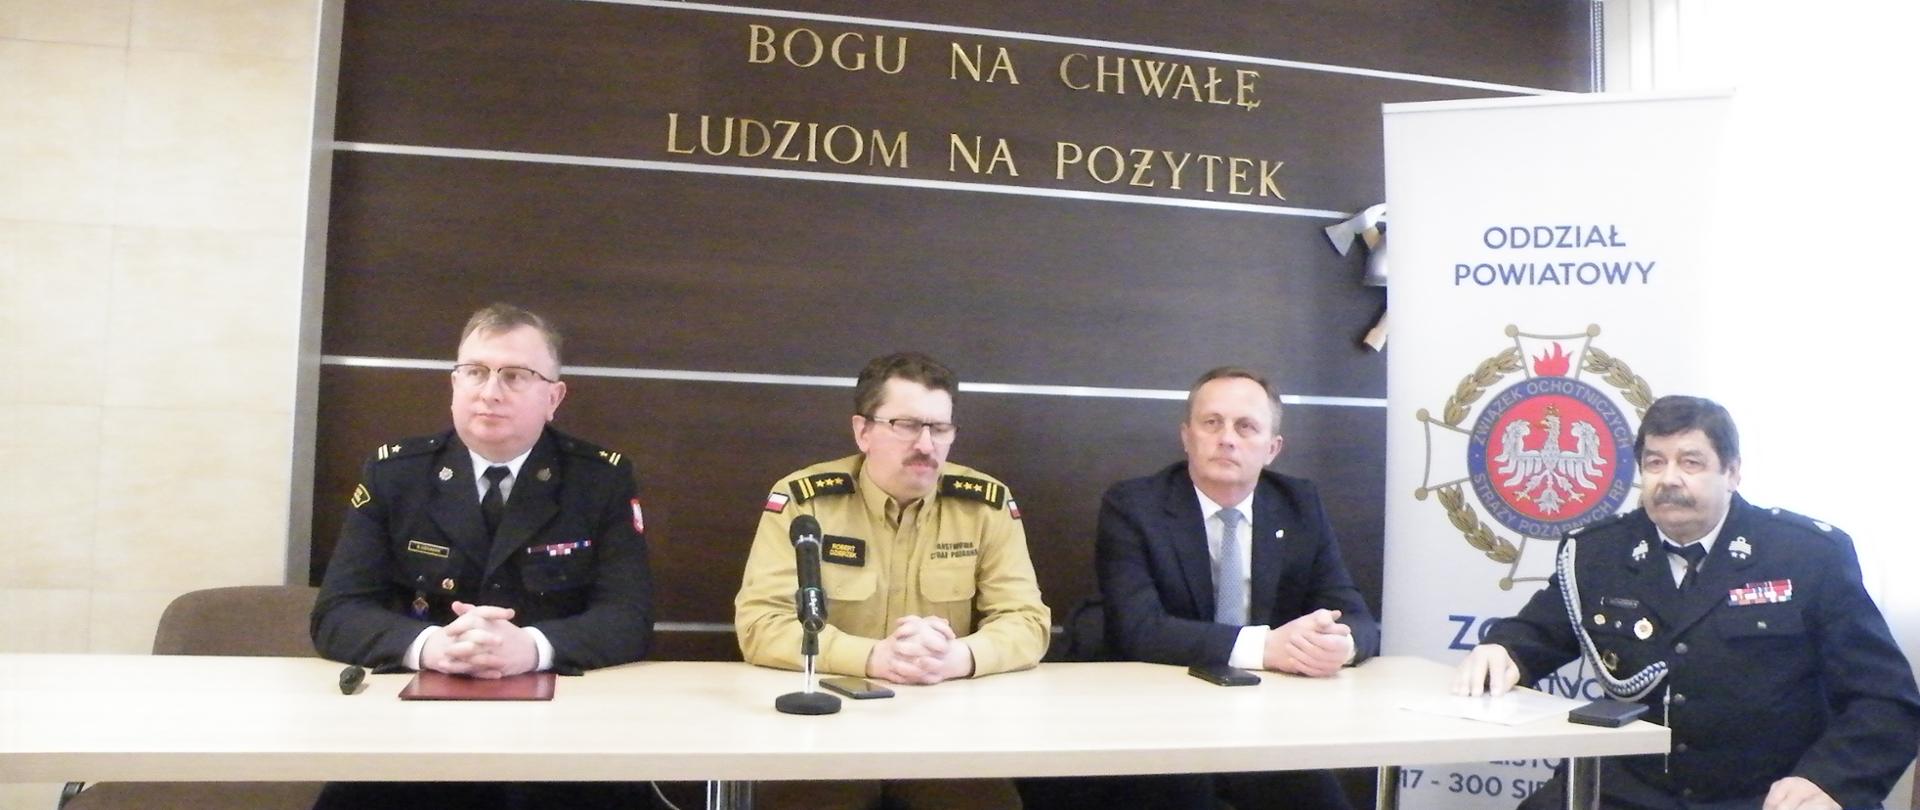 Na zdjęciu widoczny jest Zastępca Podlaskiego Komendanta PSP, Komendant Powiatowy PSP w Siemiatyczach oraz Starosta Siemiatycki